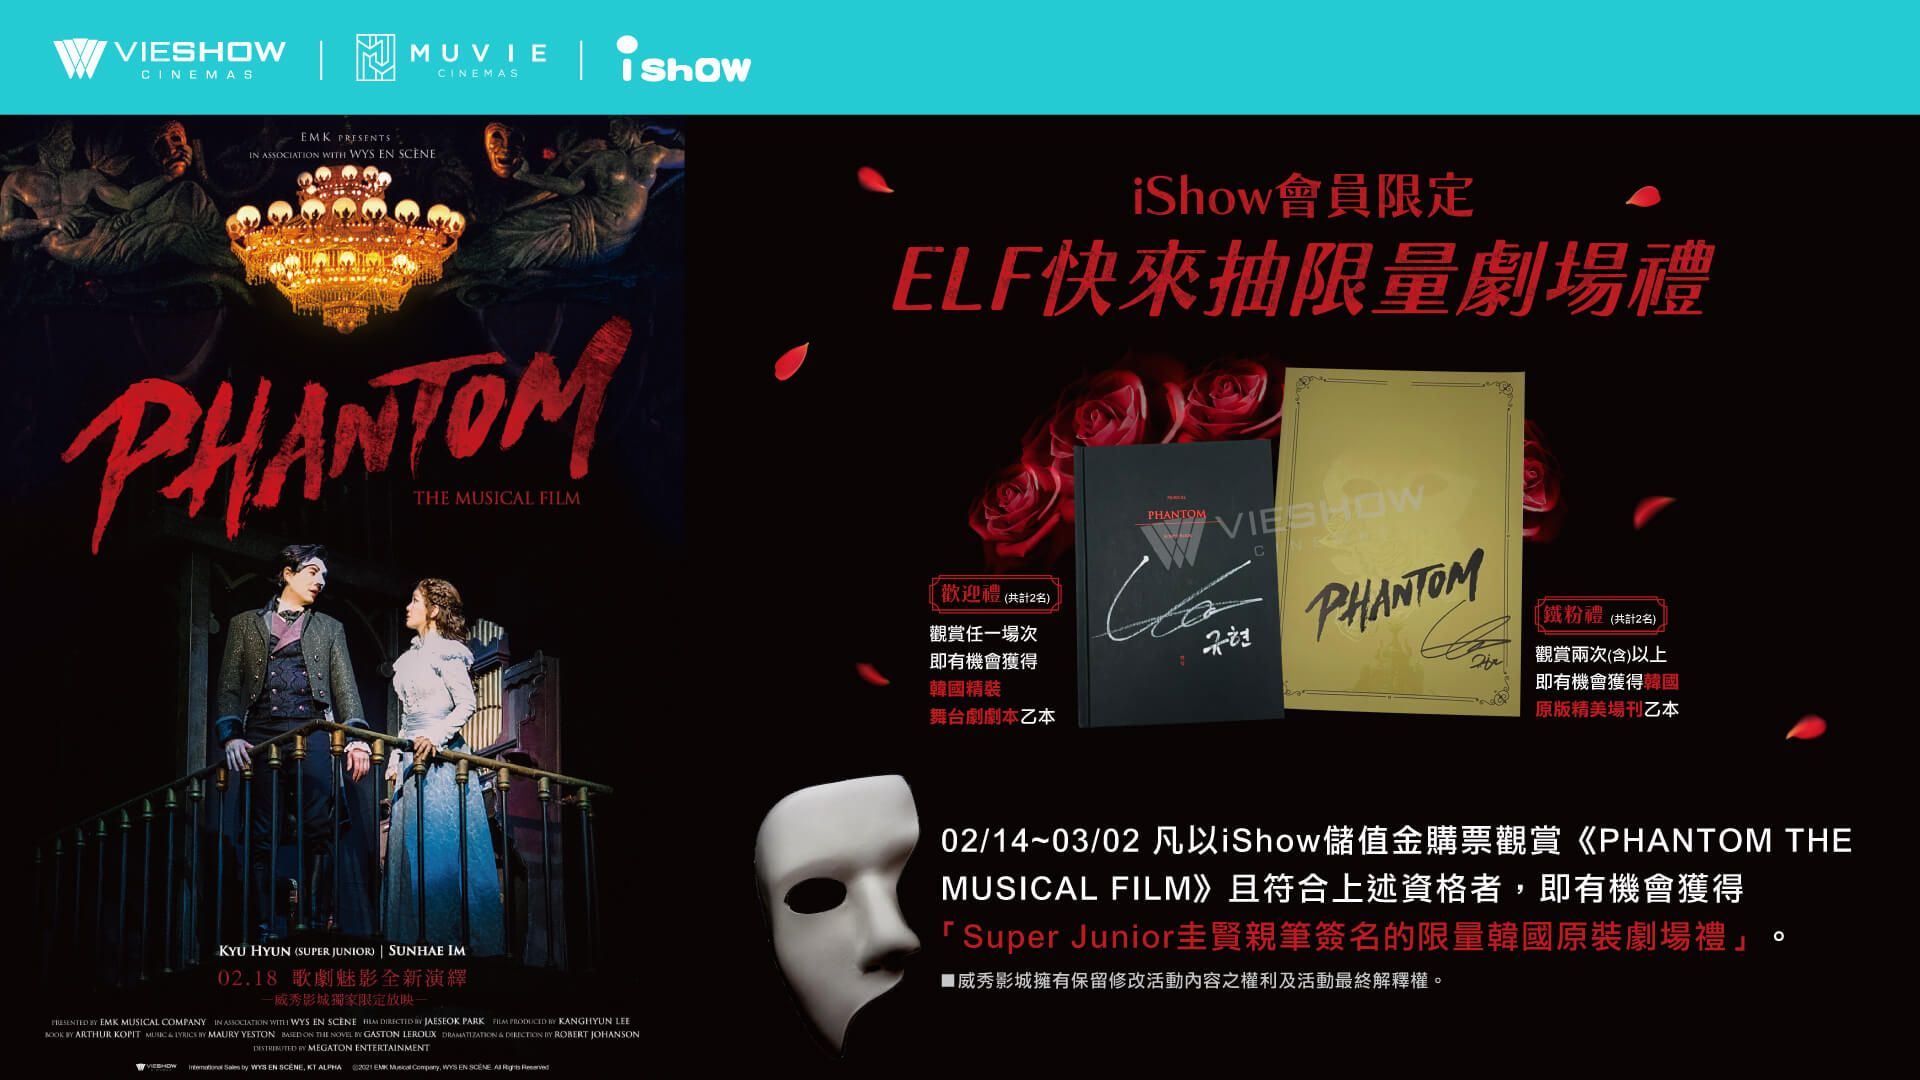 歌劇魅影,Phantom The Musical Film, Super Junior圭賢